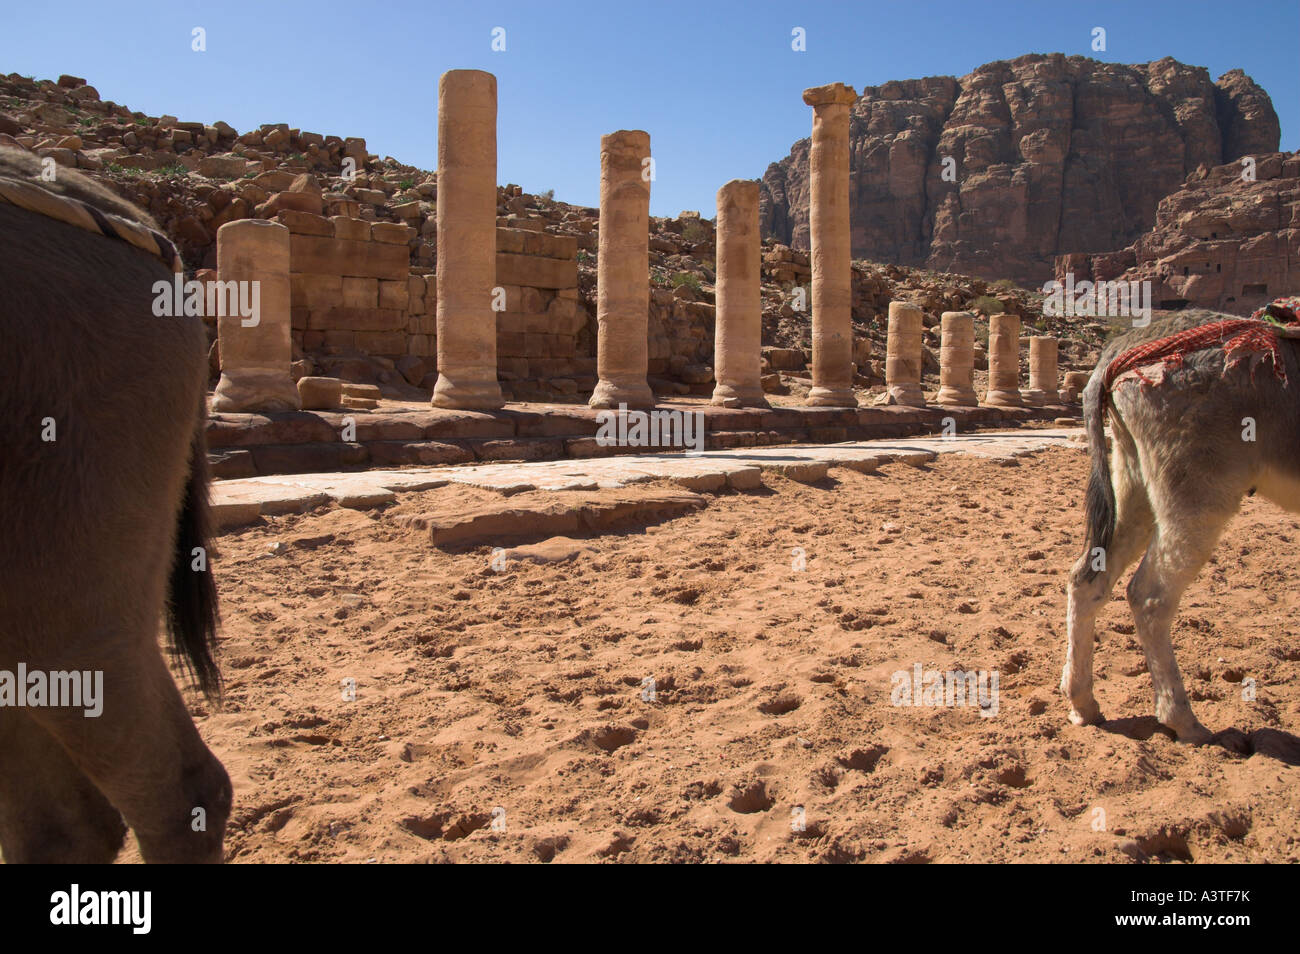 Jordan Petra archäologische Stätte Cardo Maximun Kolonnaden Straßenansicht mit zwei Esel Böden in Frgd und Felsen in bkgd Stockfoto